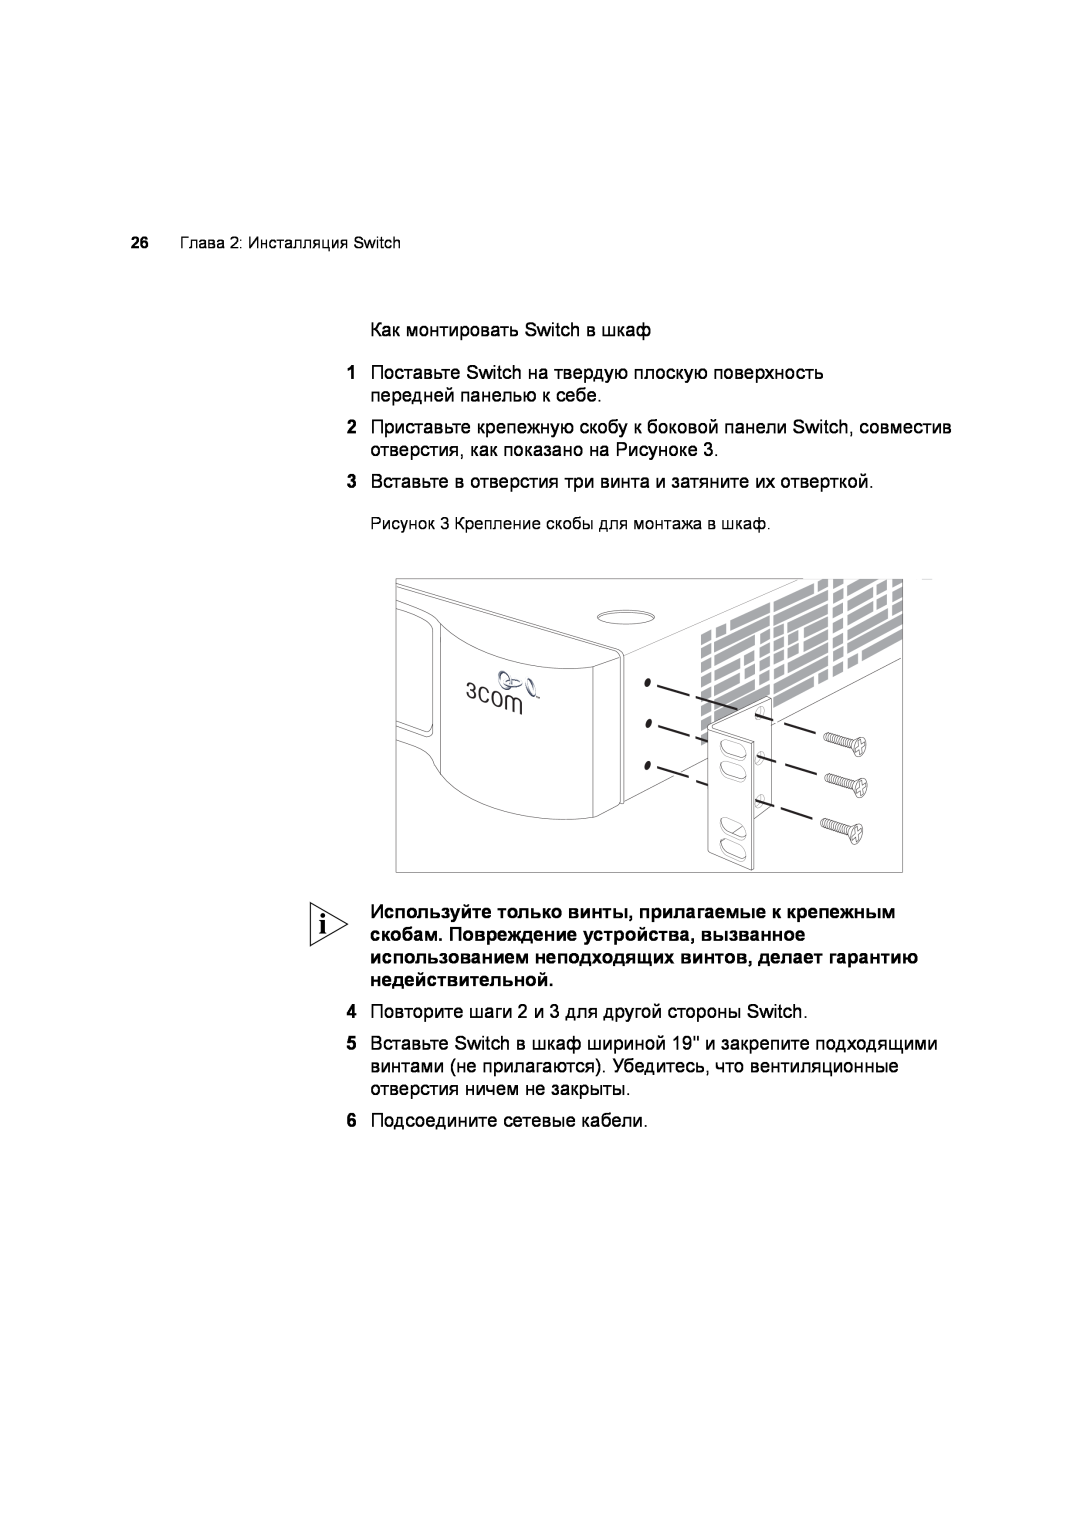 3Com 3C17701 manual Как монтировать Switch в шкаф 